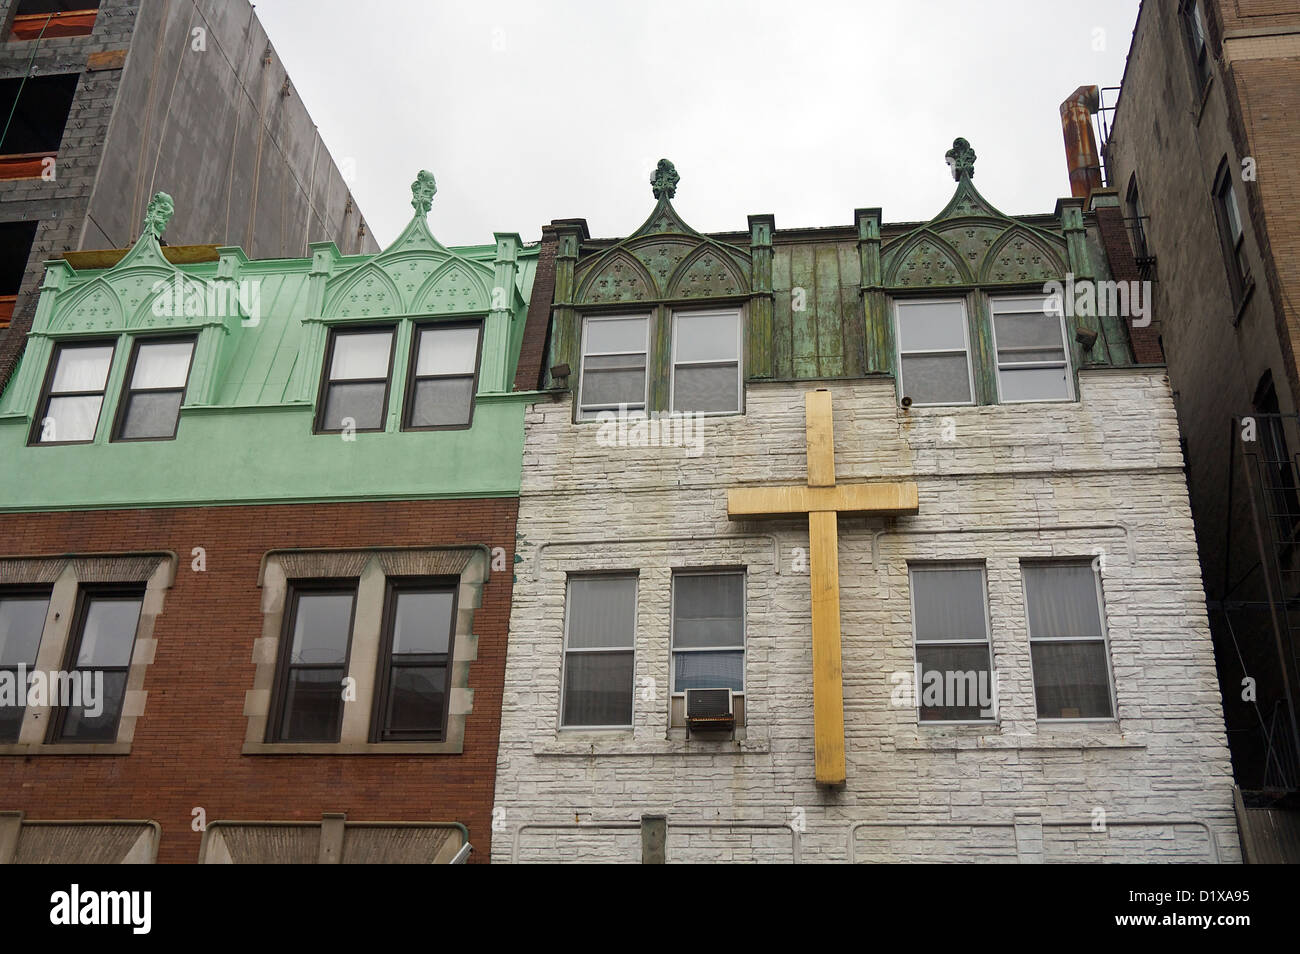 Dettaglio degli edifici di Harlem, a New York City, compresa una chiesa Foto Stock